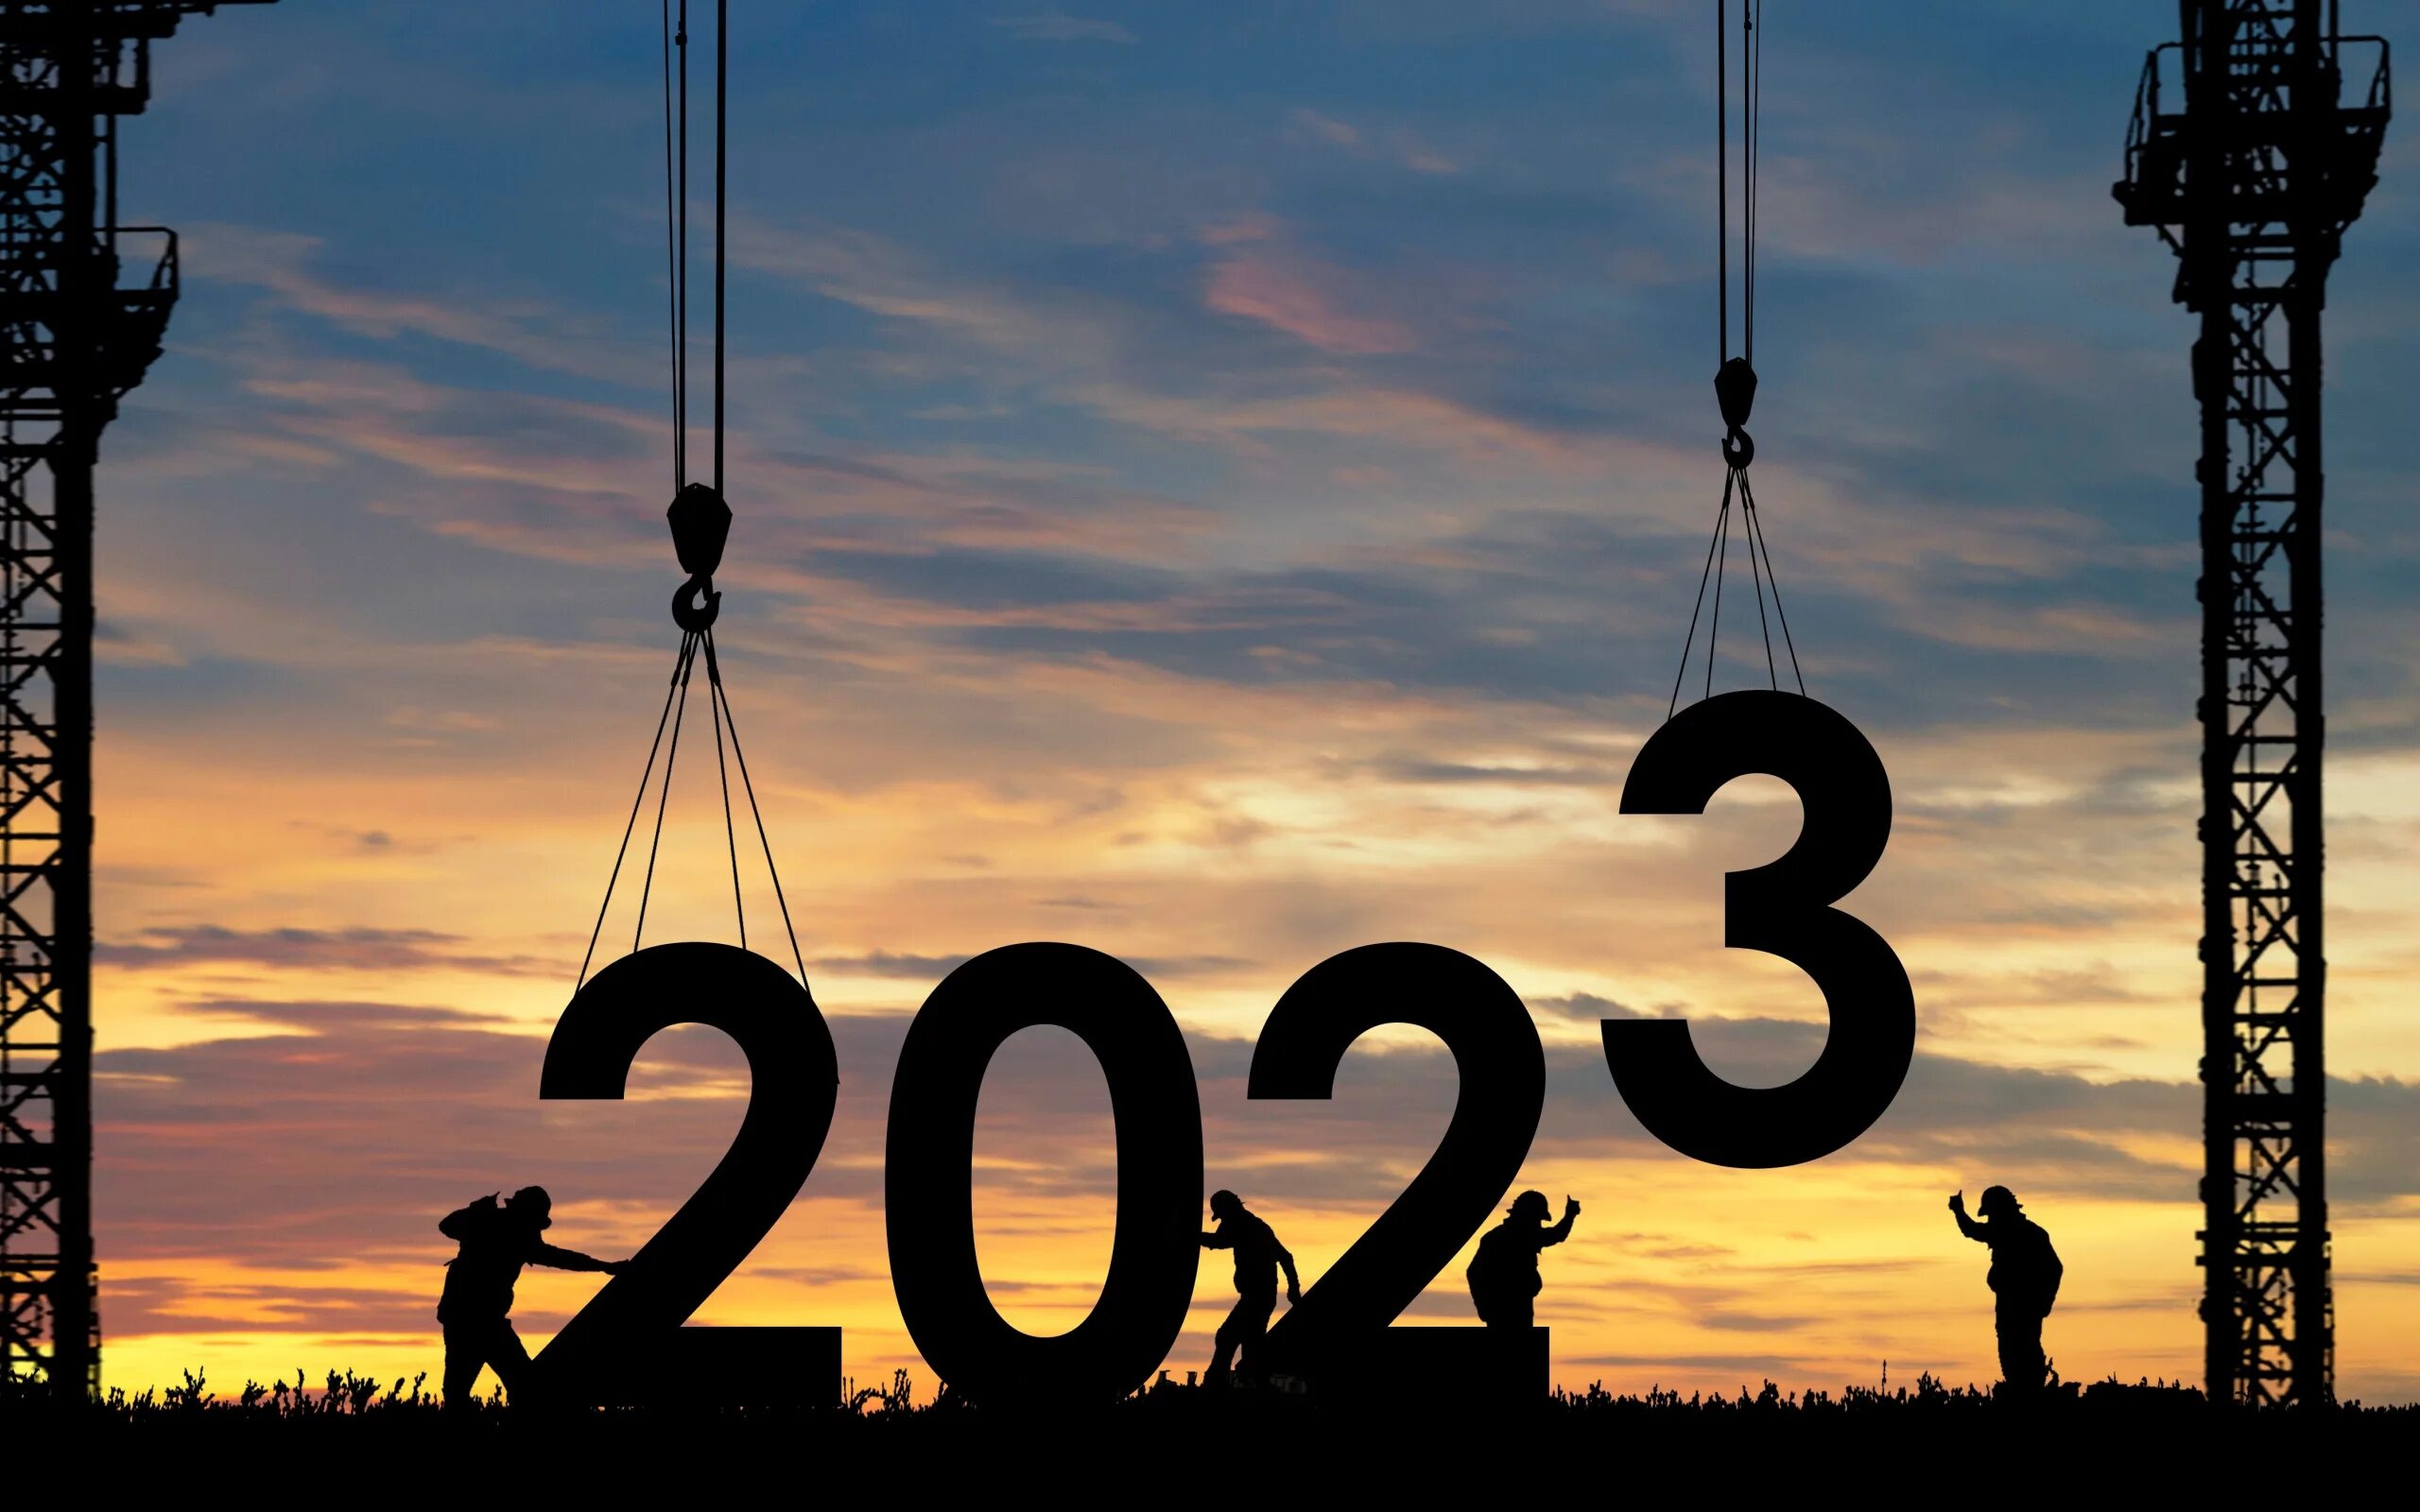 Рабочие 2023. 2020 Year. Жизнь за год 2020 картинки. Ассоциации с 2020 годом картинки. Строительных компаний 2020 год картинка.